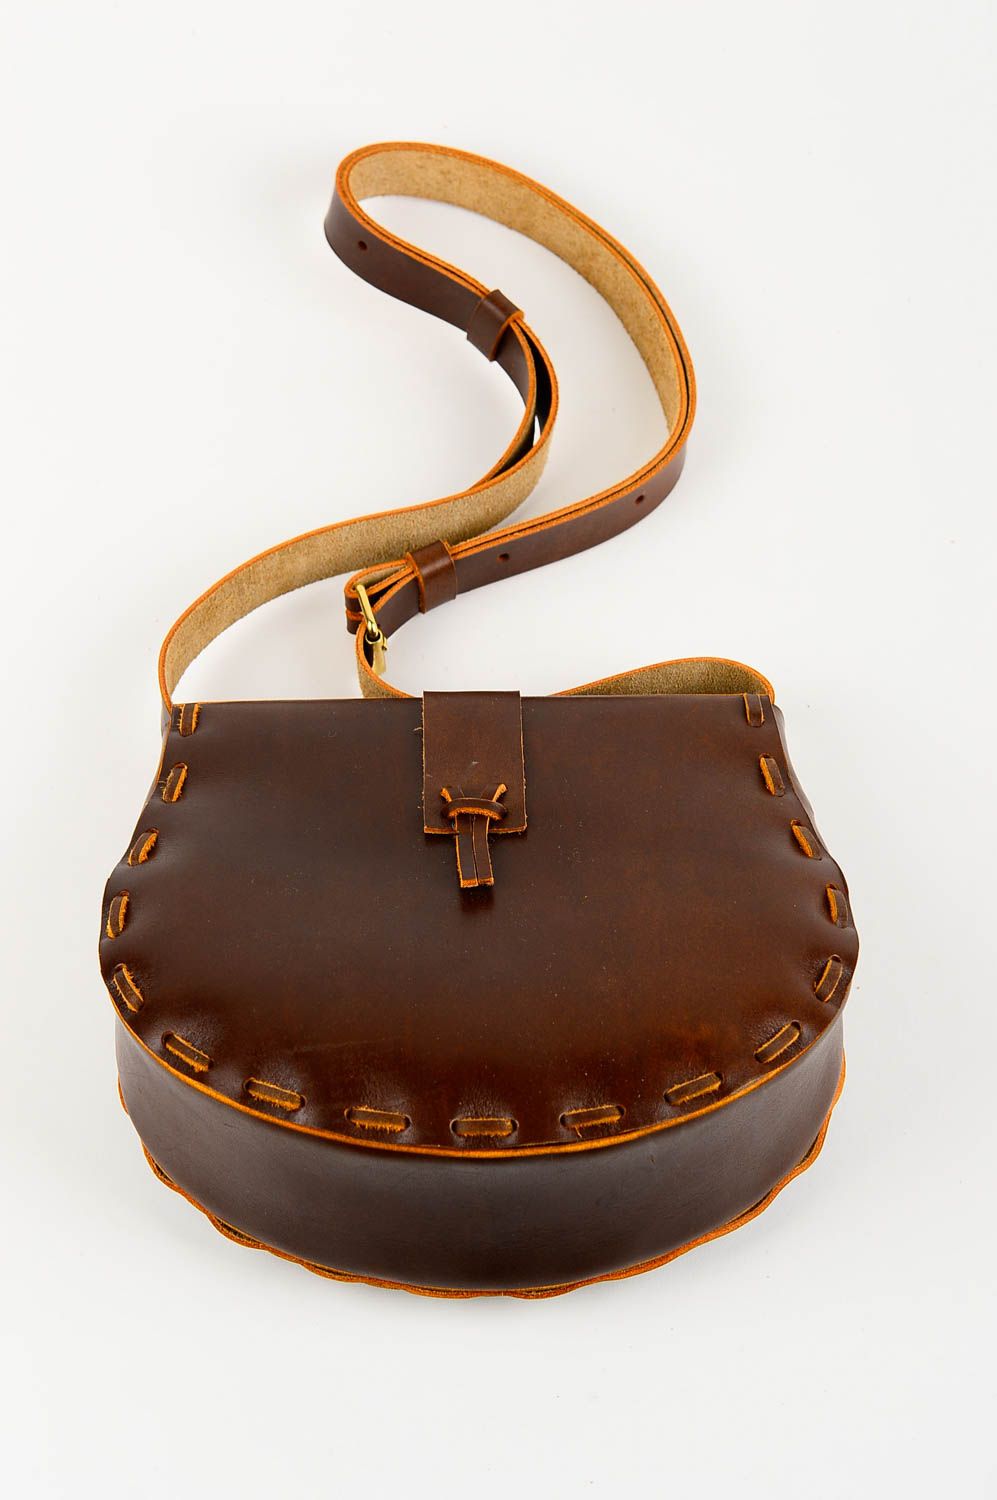 Сумка ручной работы сумка на плечо красивая кожаная сумка авторская стильная фото 4